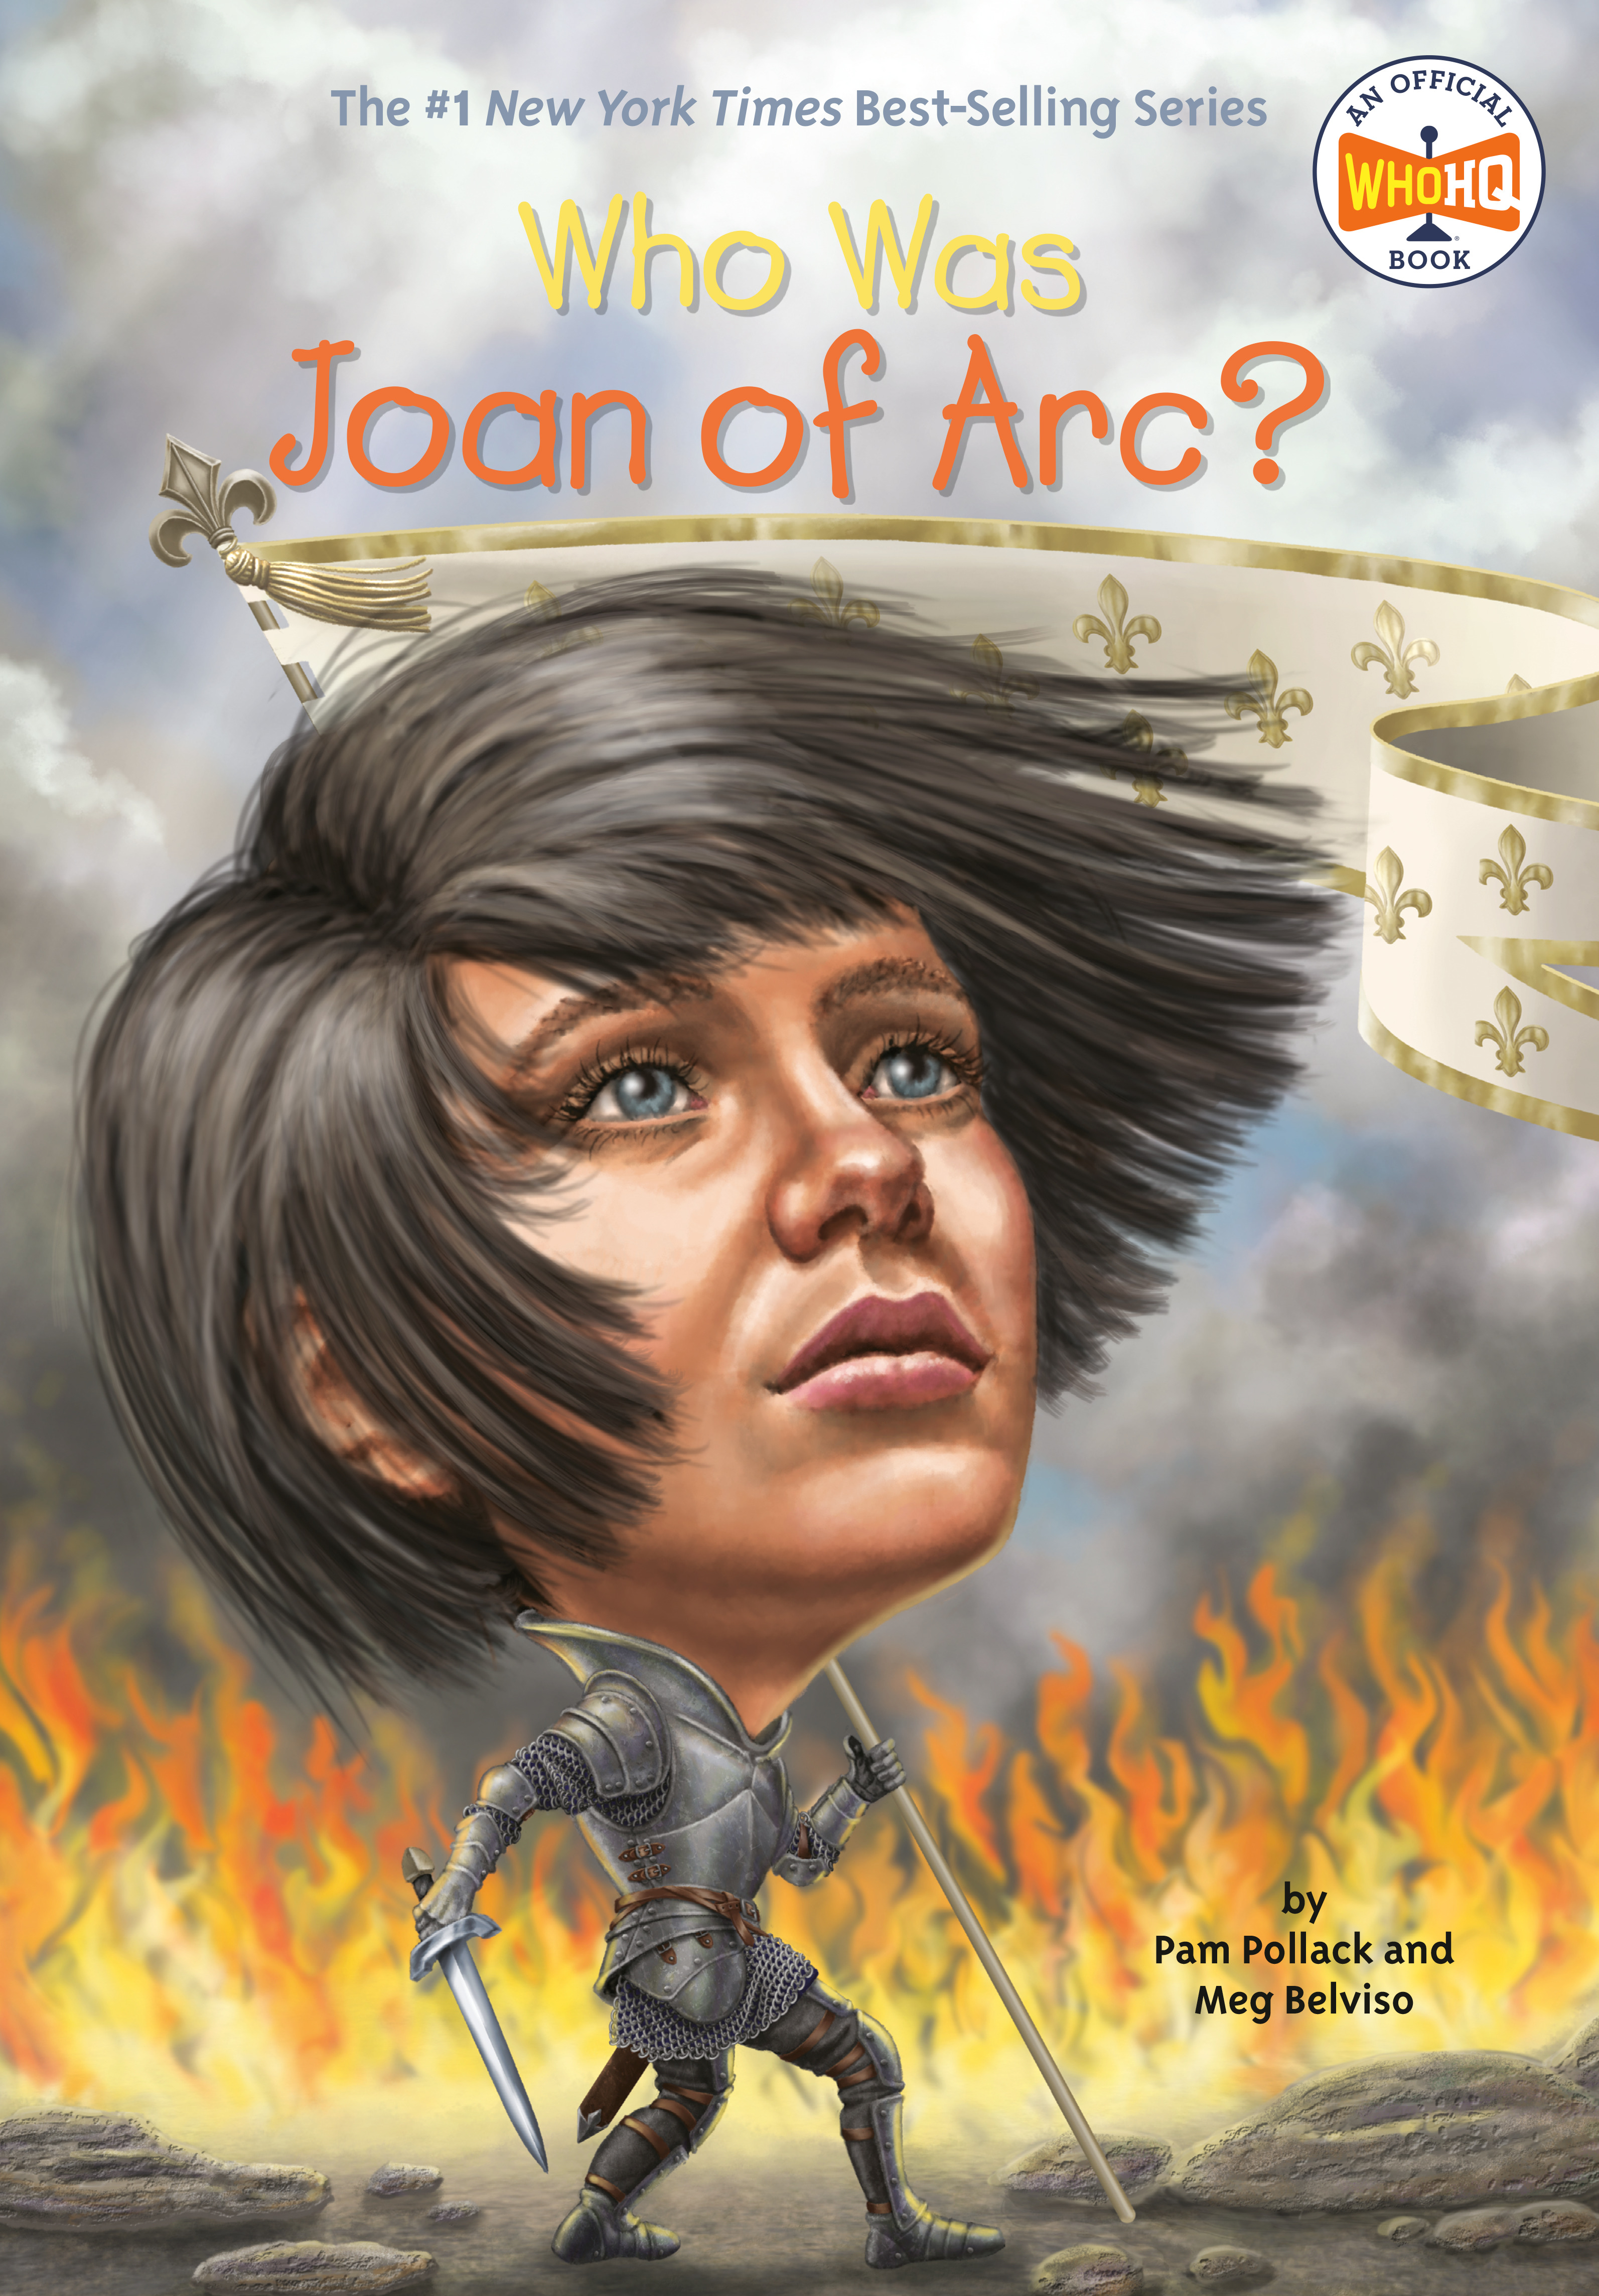 Who Was Joan of Arc? | Pollack, Pam (Auteur) | Belviso, Meg (Auteur) | Thomson, Andrew (Illustrateur)